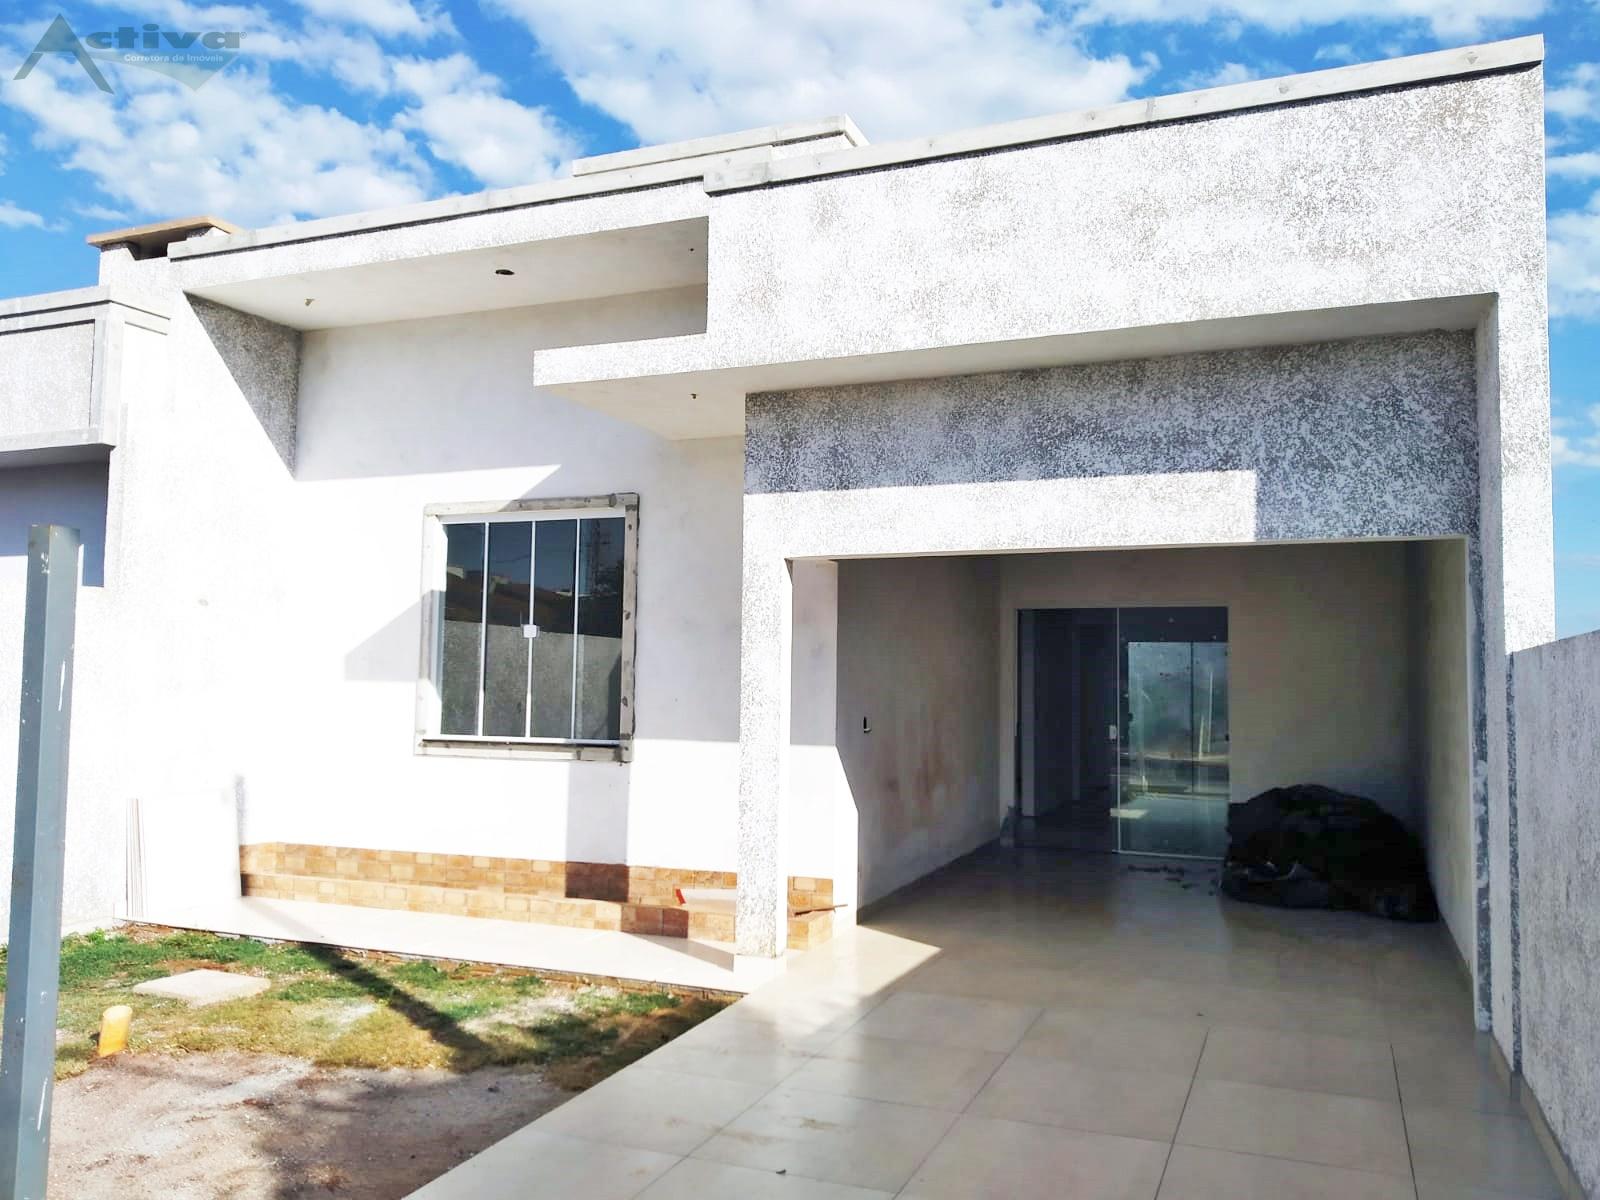 Casa à venda, Vila gaúcha, MARECHAL CANDIDO RONDON - PR